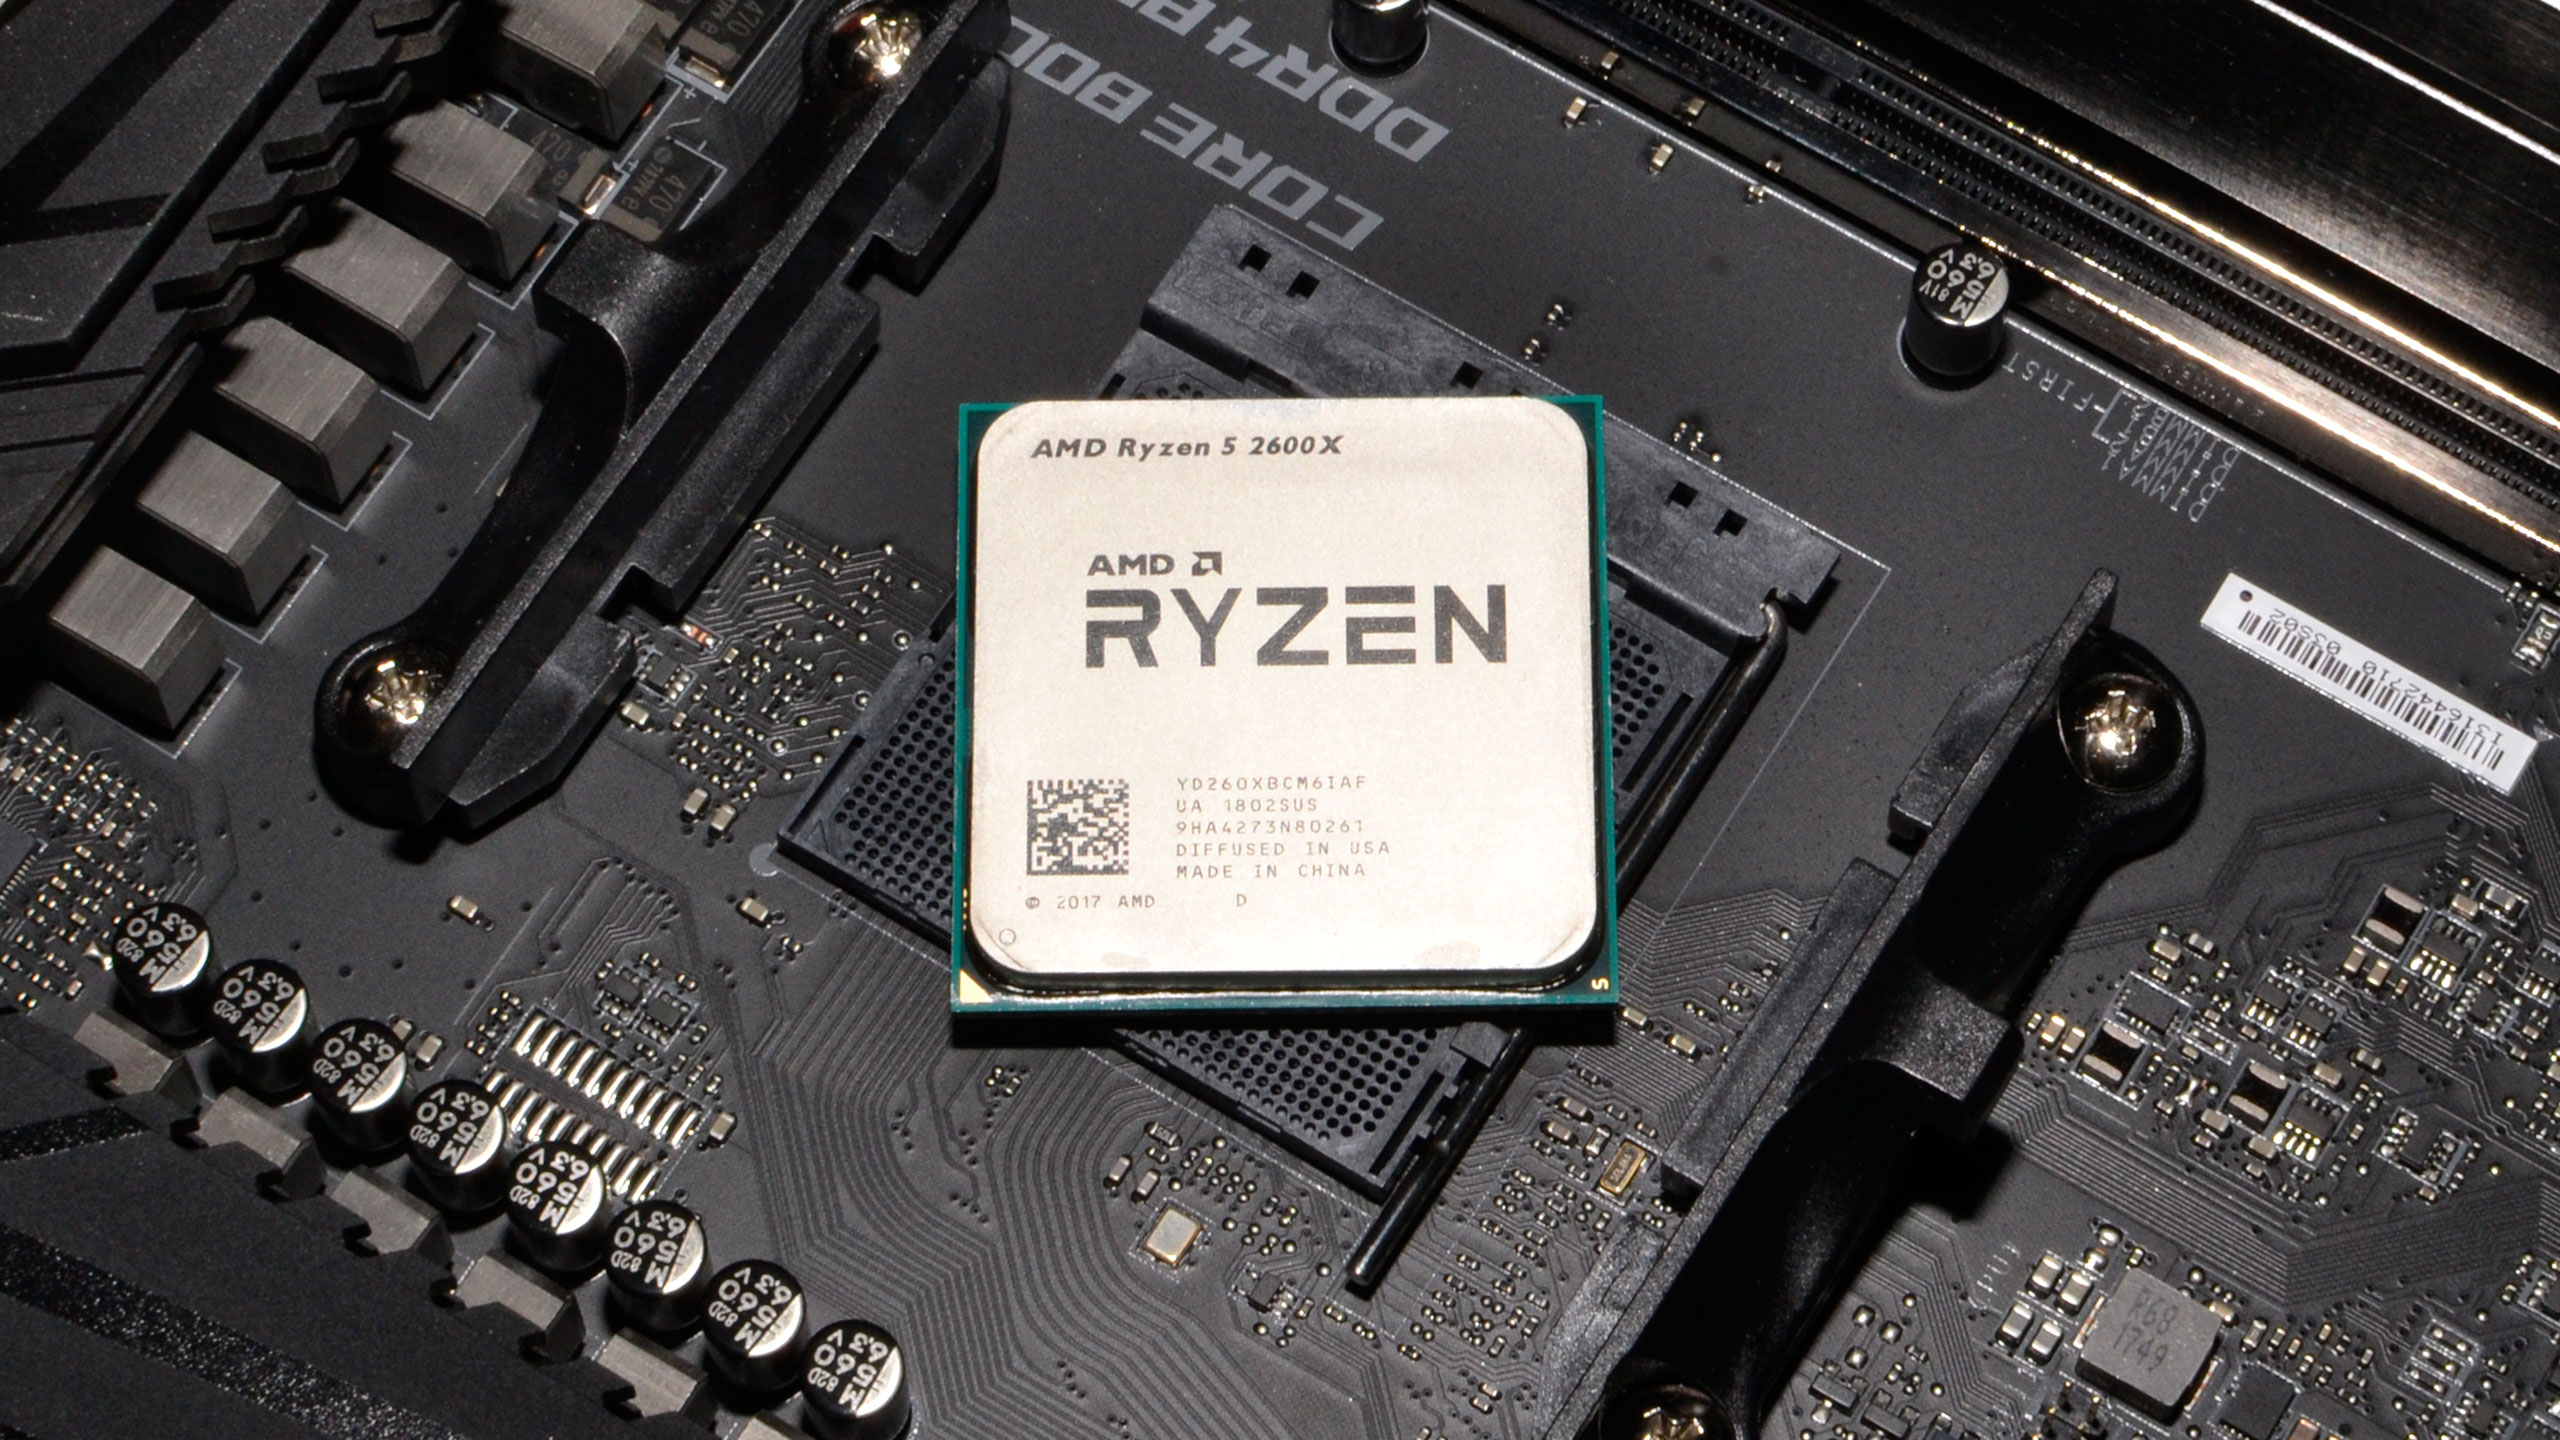 Райзен какой сокет. Ryzen 2600x. AMD Ryzen 5 2600x. AMD 5 2600. Процессор AMD Ryzen 5 2600 am4.